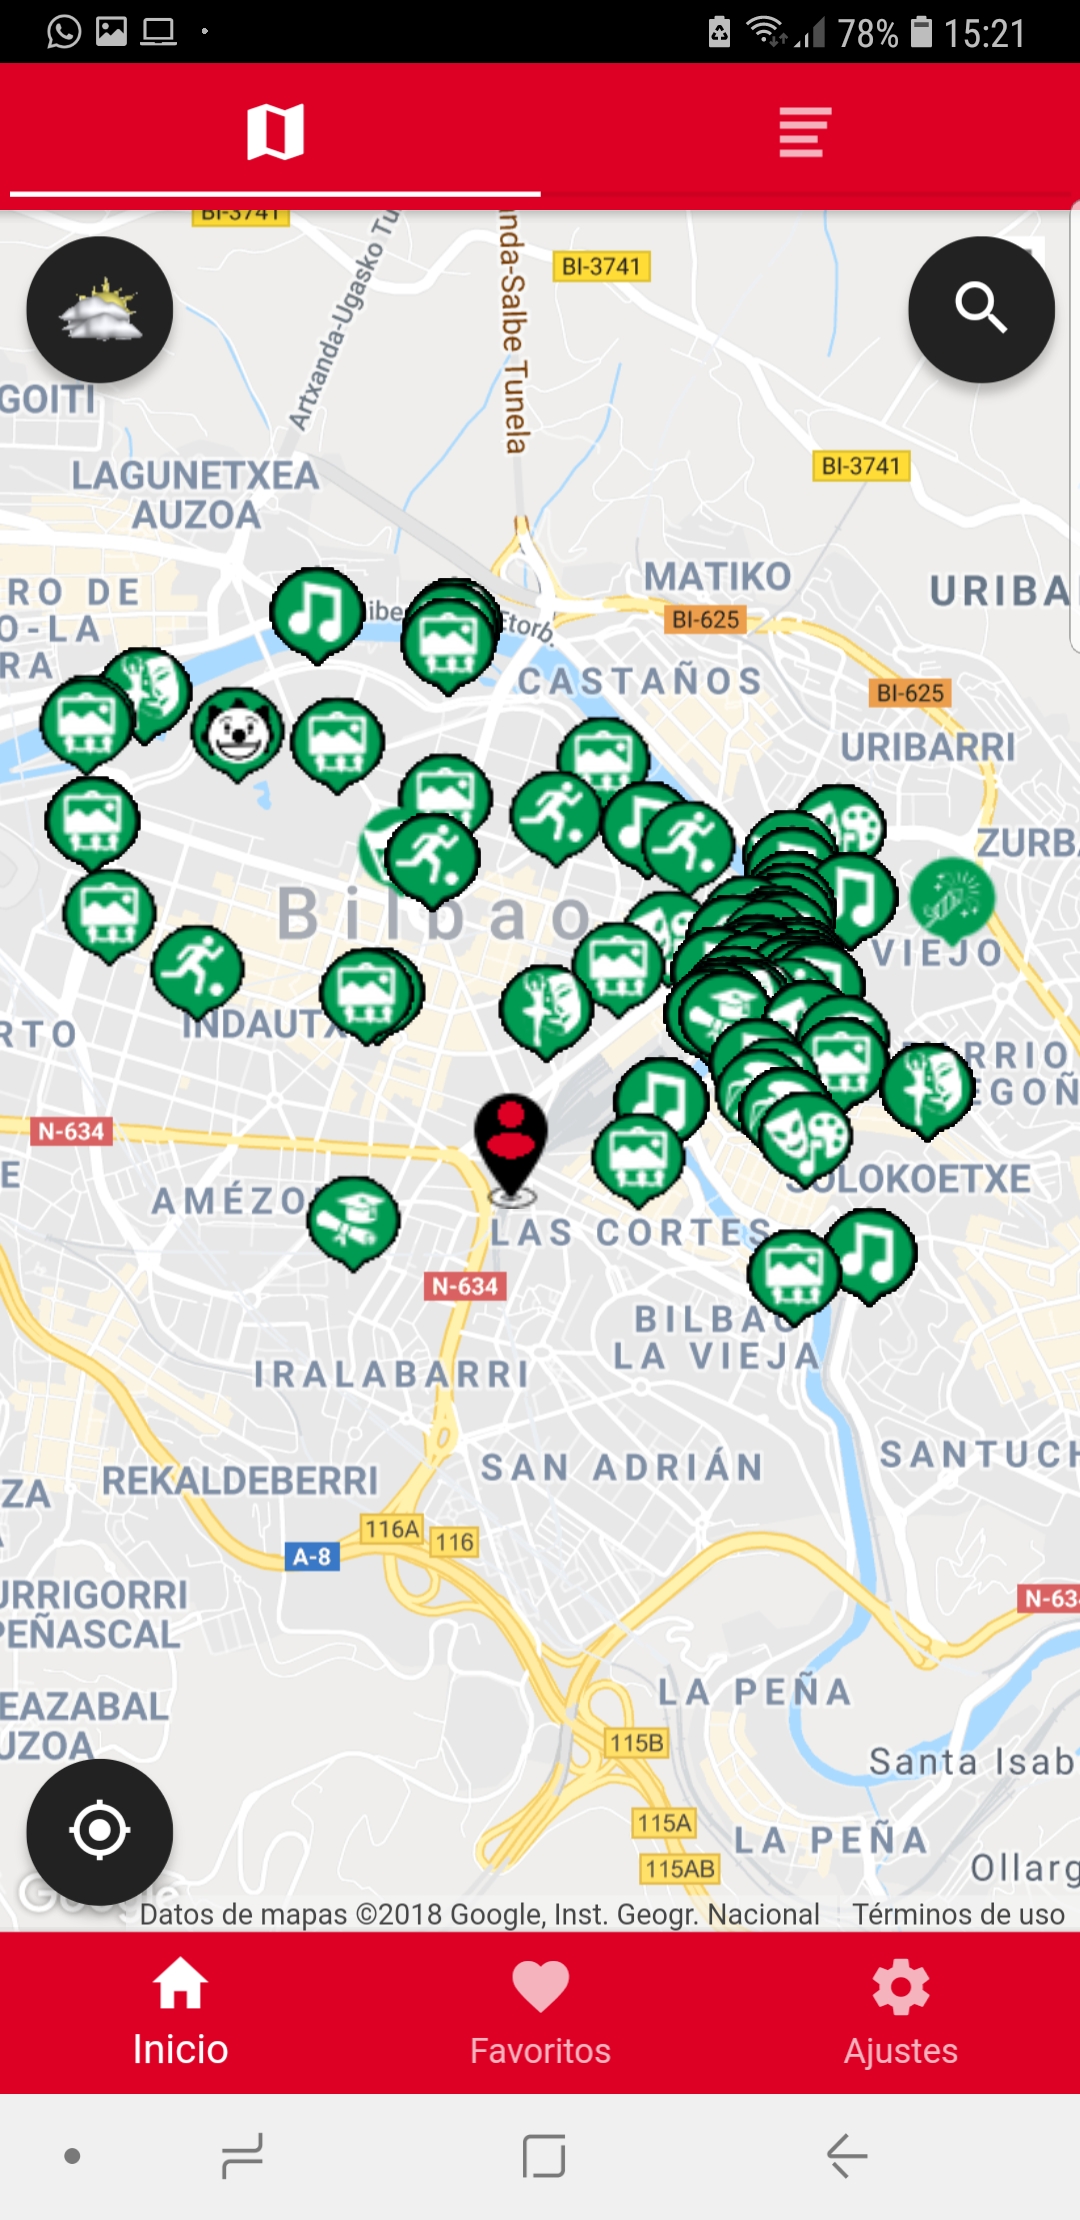 Mapa eventos Fiestas de Bilbao, Aste Nagusia 2018